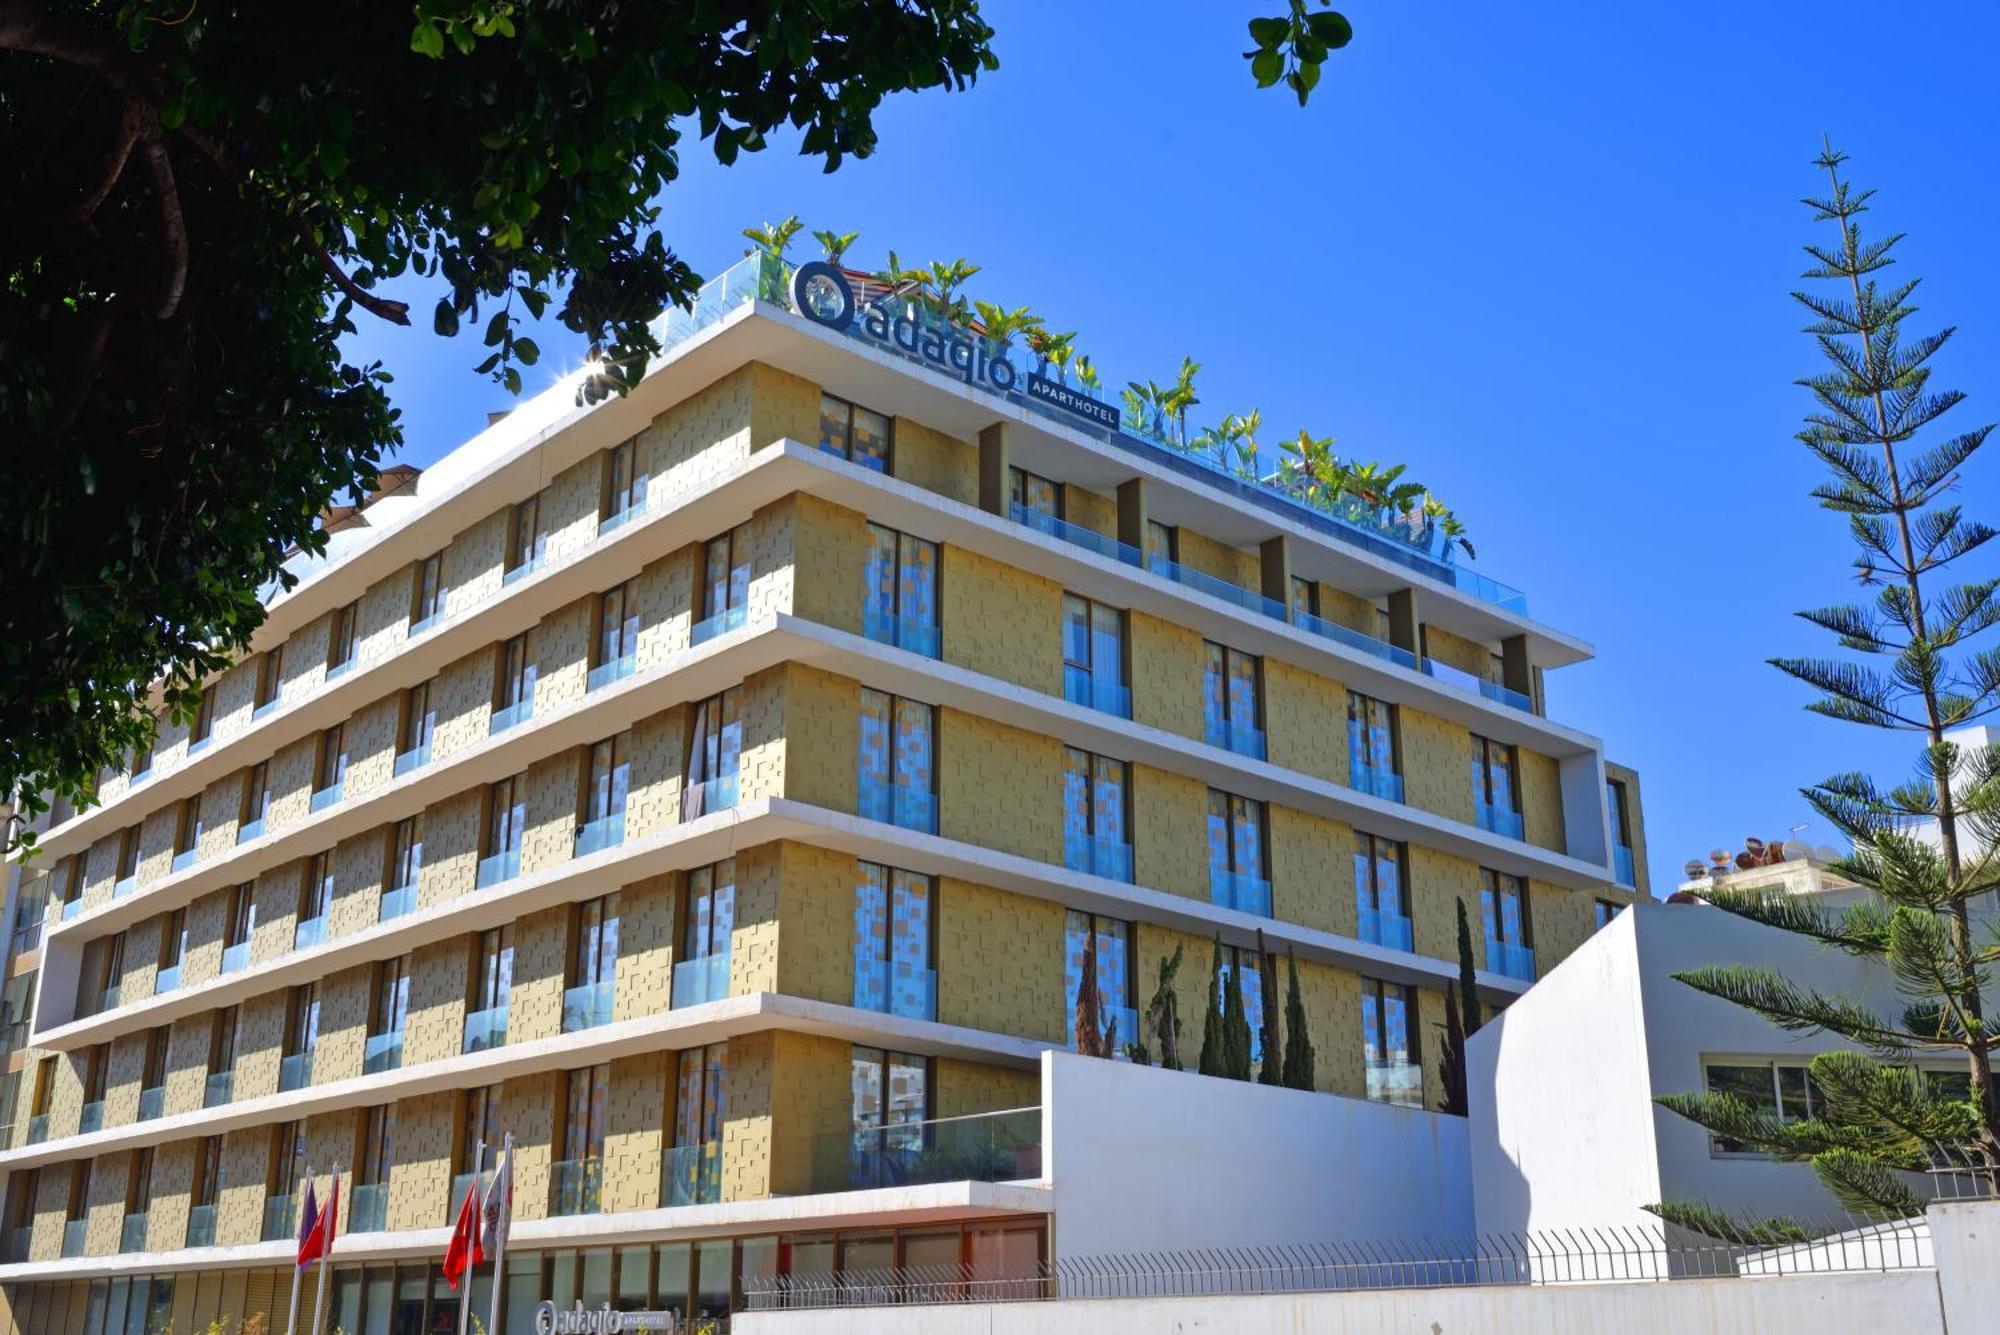 Aparthotel Adagio Premium Casablanca City Center 外观 照片